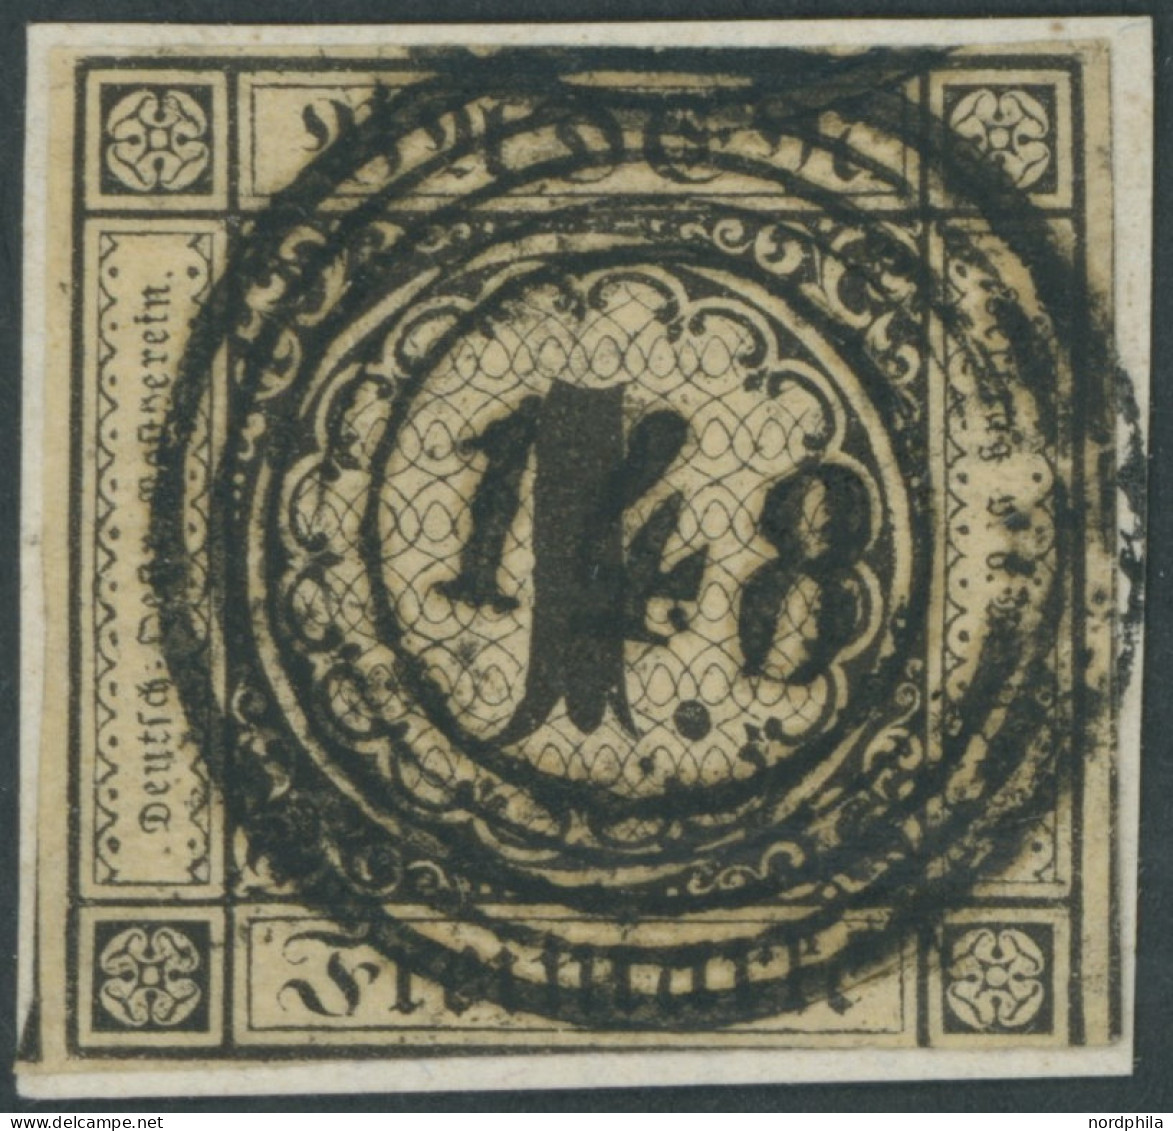 BADEN 1a BrfStk, 1851, 1 Kr. Schwarz Auf Sämisch, Zentrischer Nummernstempel 148, Unten Teils Etwas Angeschnitten Sonst  - Gebraucht